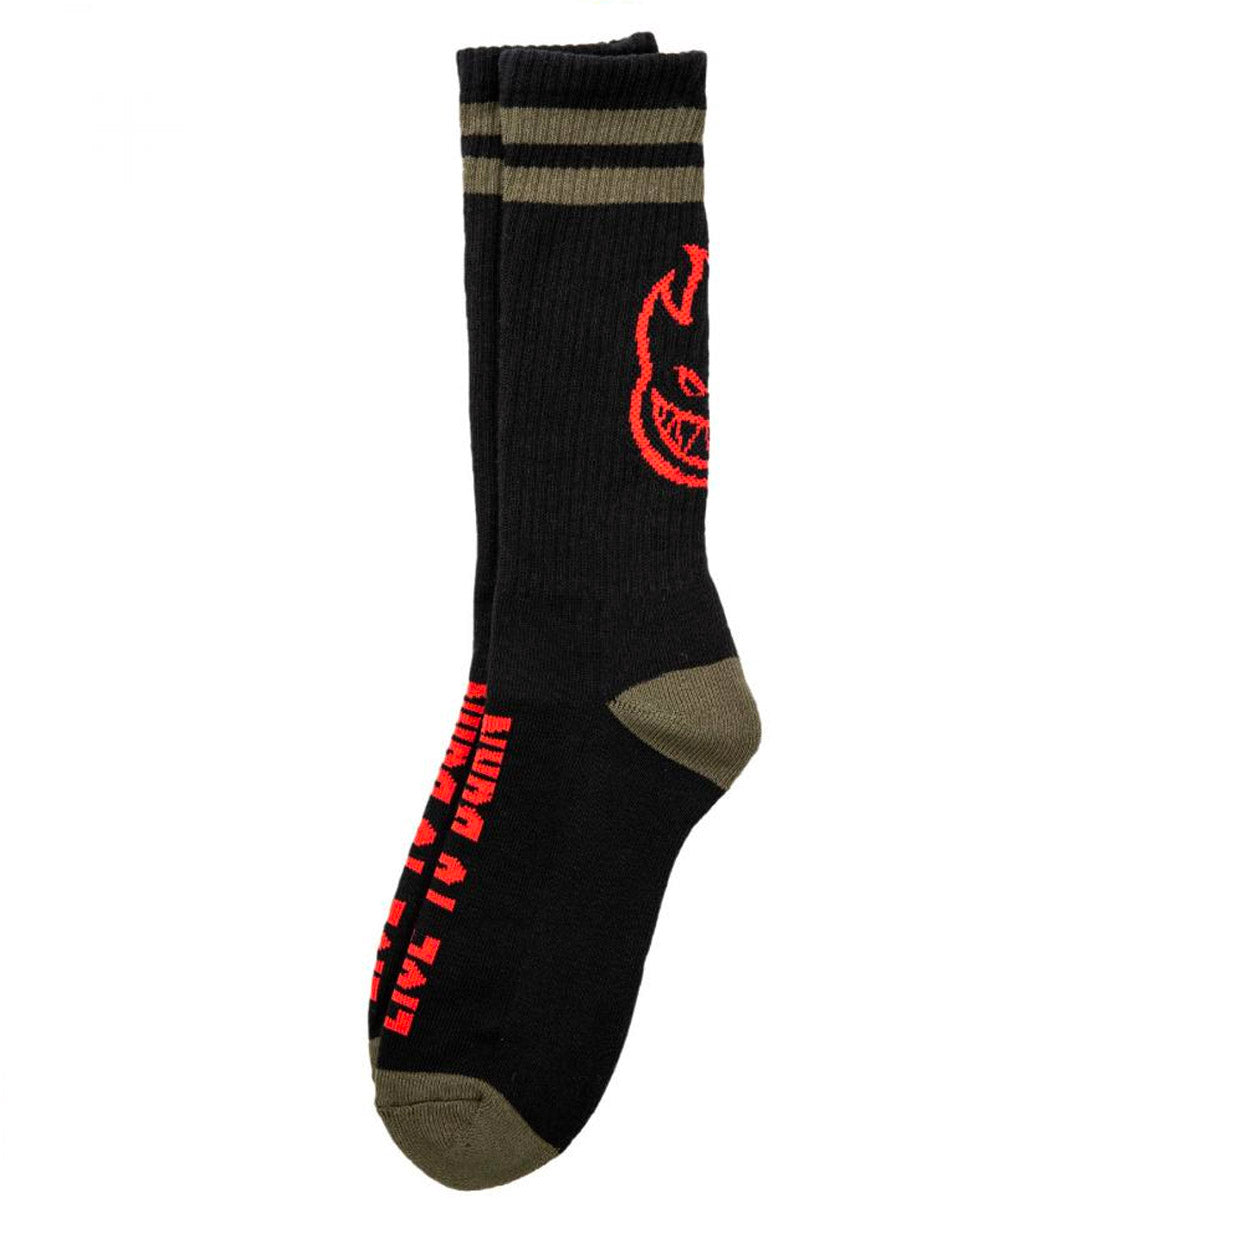 Spitfire Heads Up Socks - Black / Olive / Red - Prime Delux Store